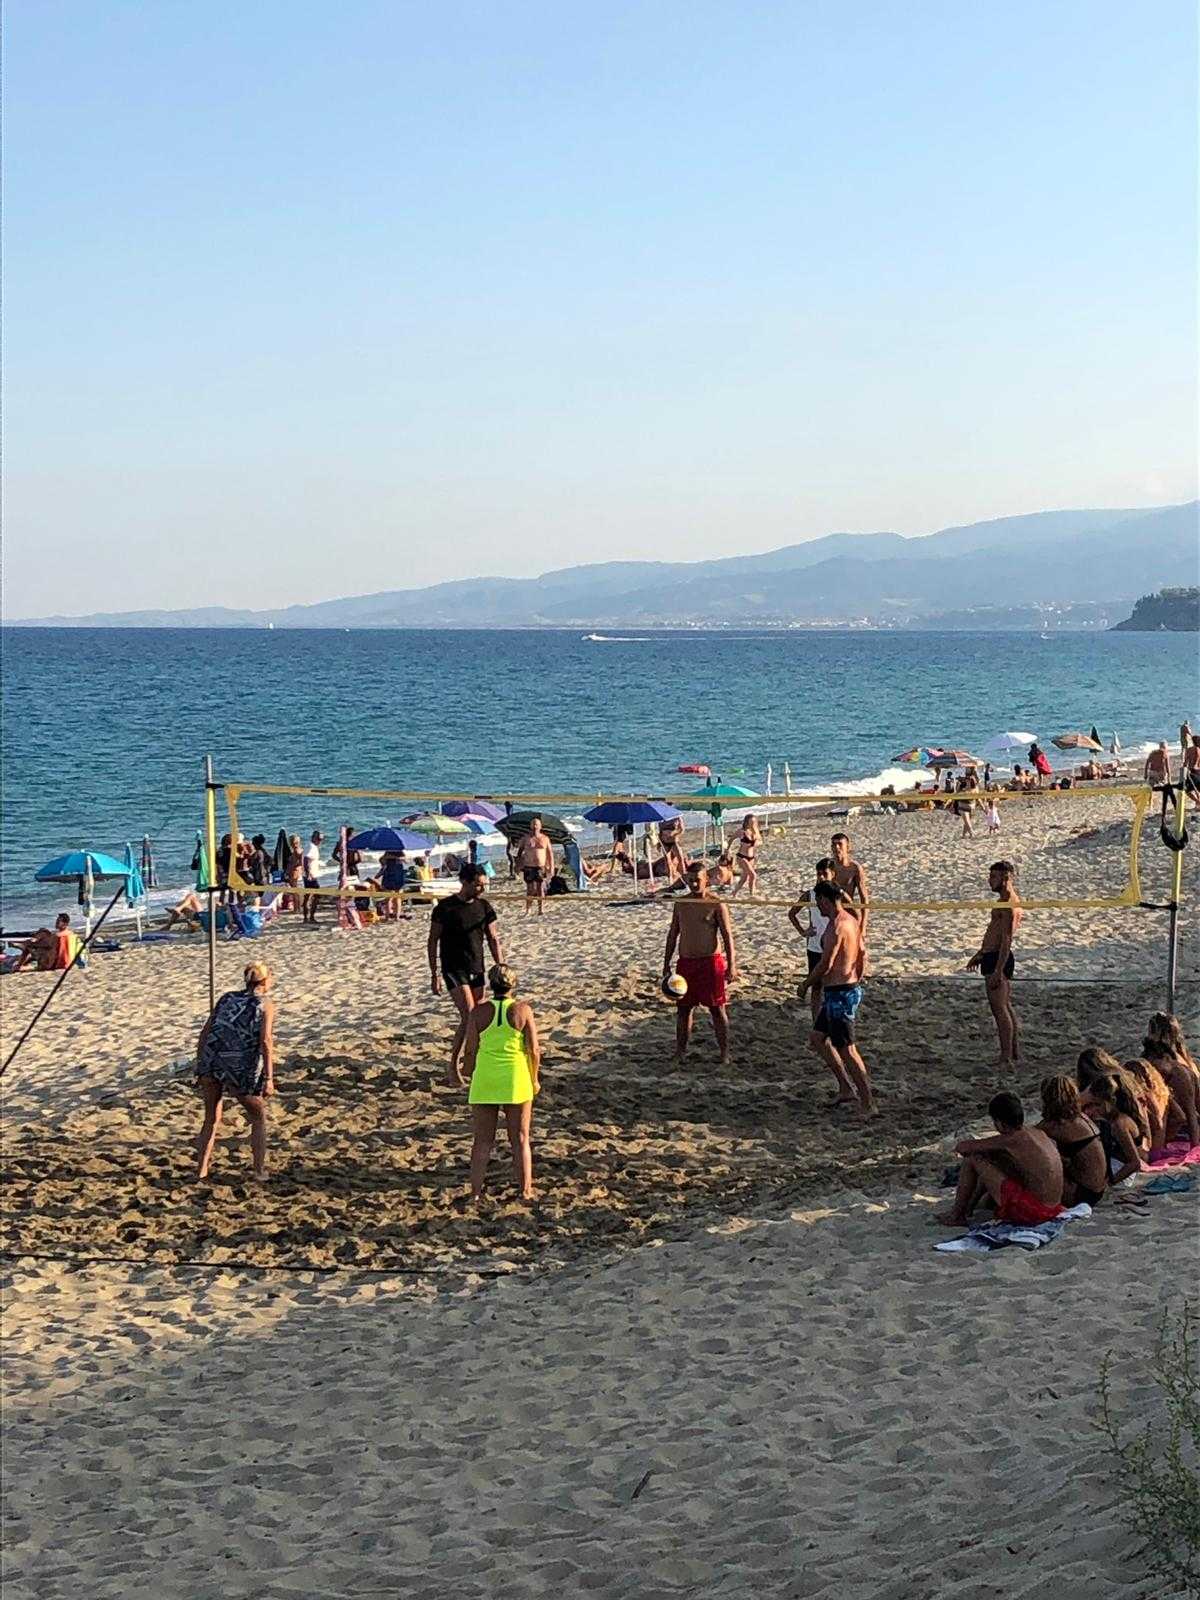 “Città del Vento” Beach volley in campeggio - Circolo Acli Catanzaro